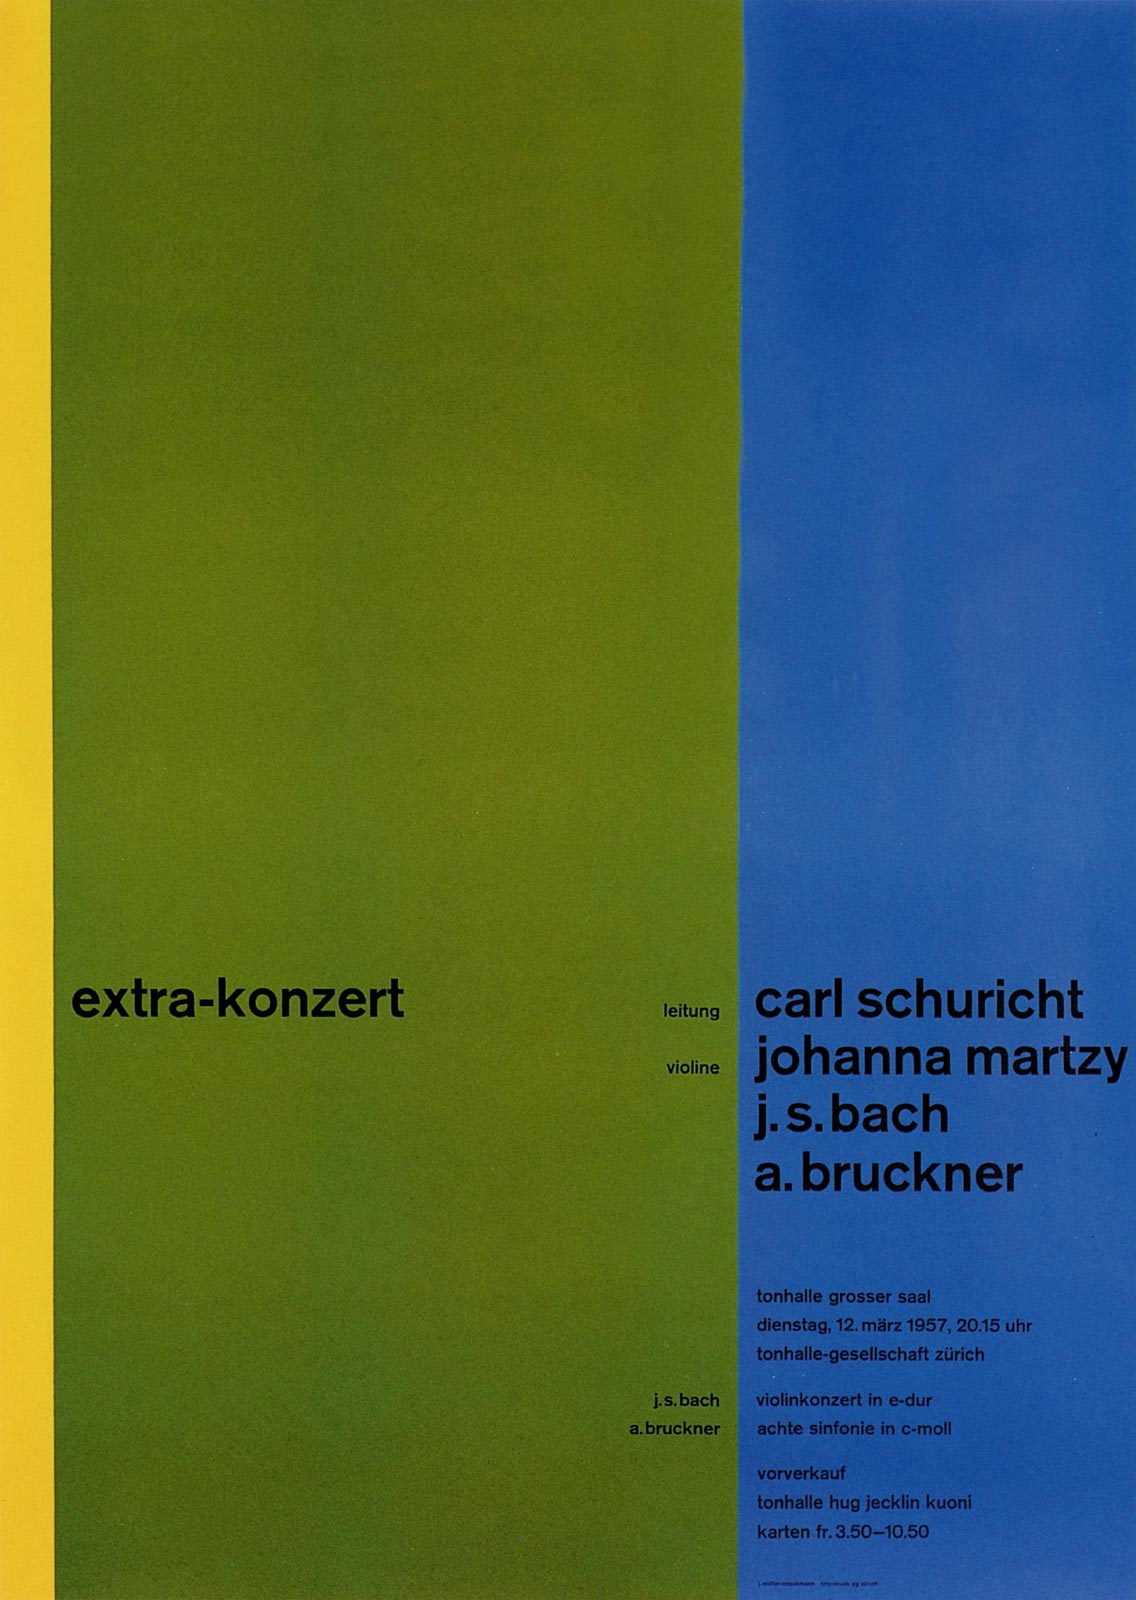 11. Zurich Tonhalle. Concert poster, 1958